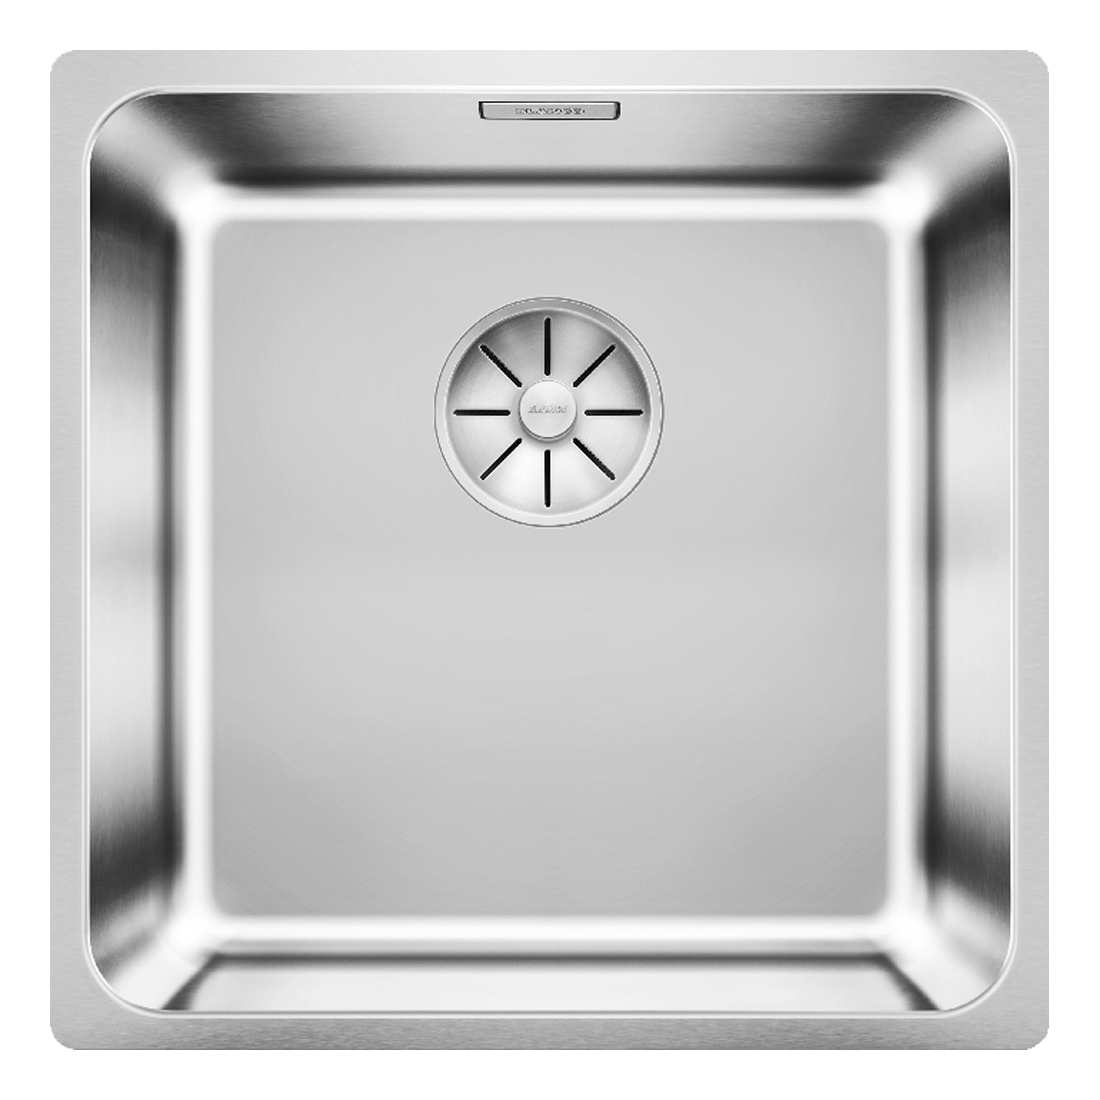 Кухонная мойка Blanco Solis 400-U полированная сталь кухонная мойка blanco solis 500 u полированная сталь